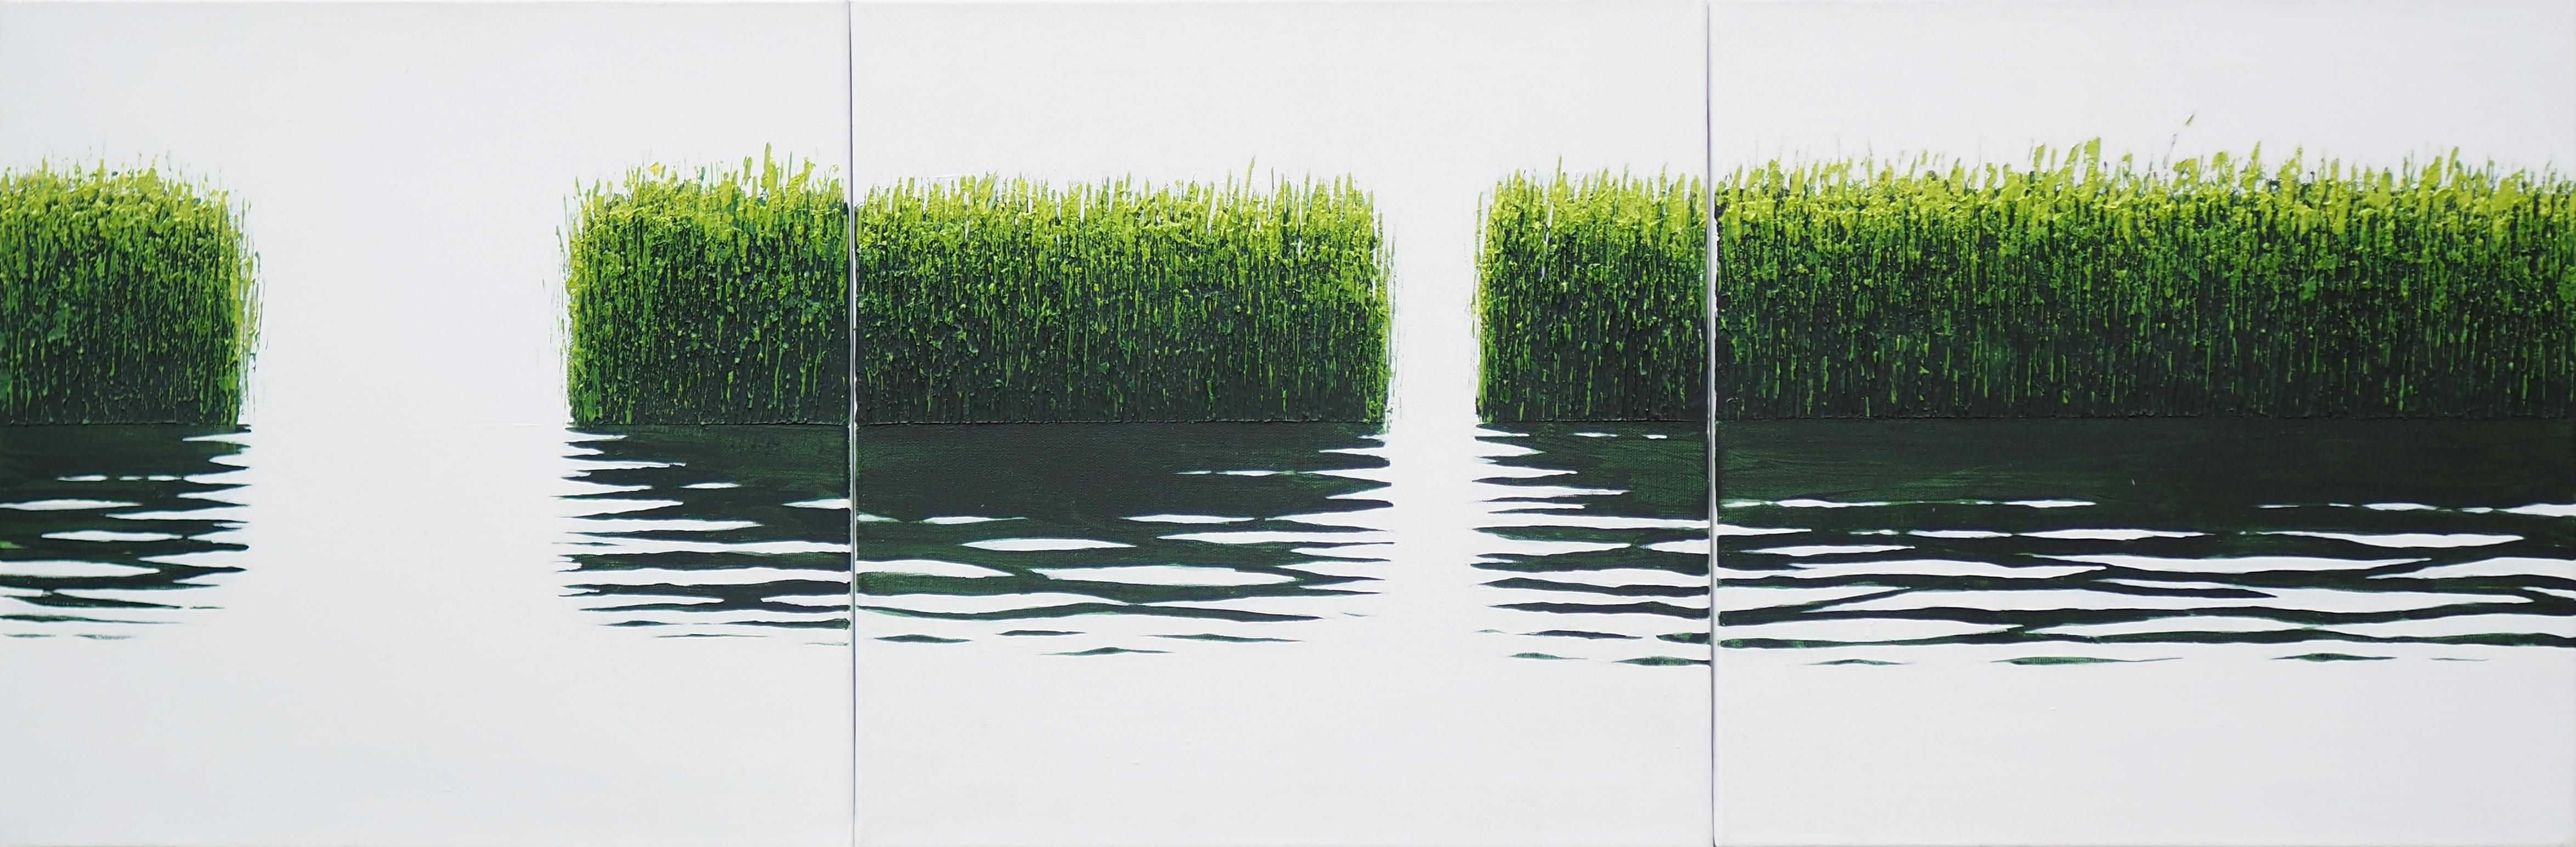 GRASSES V Triptyque - Paysage atmosphérique, peinture moderne de paysage marin. 